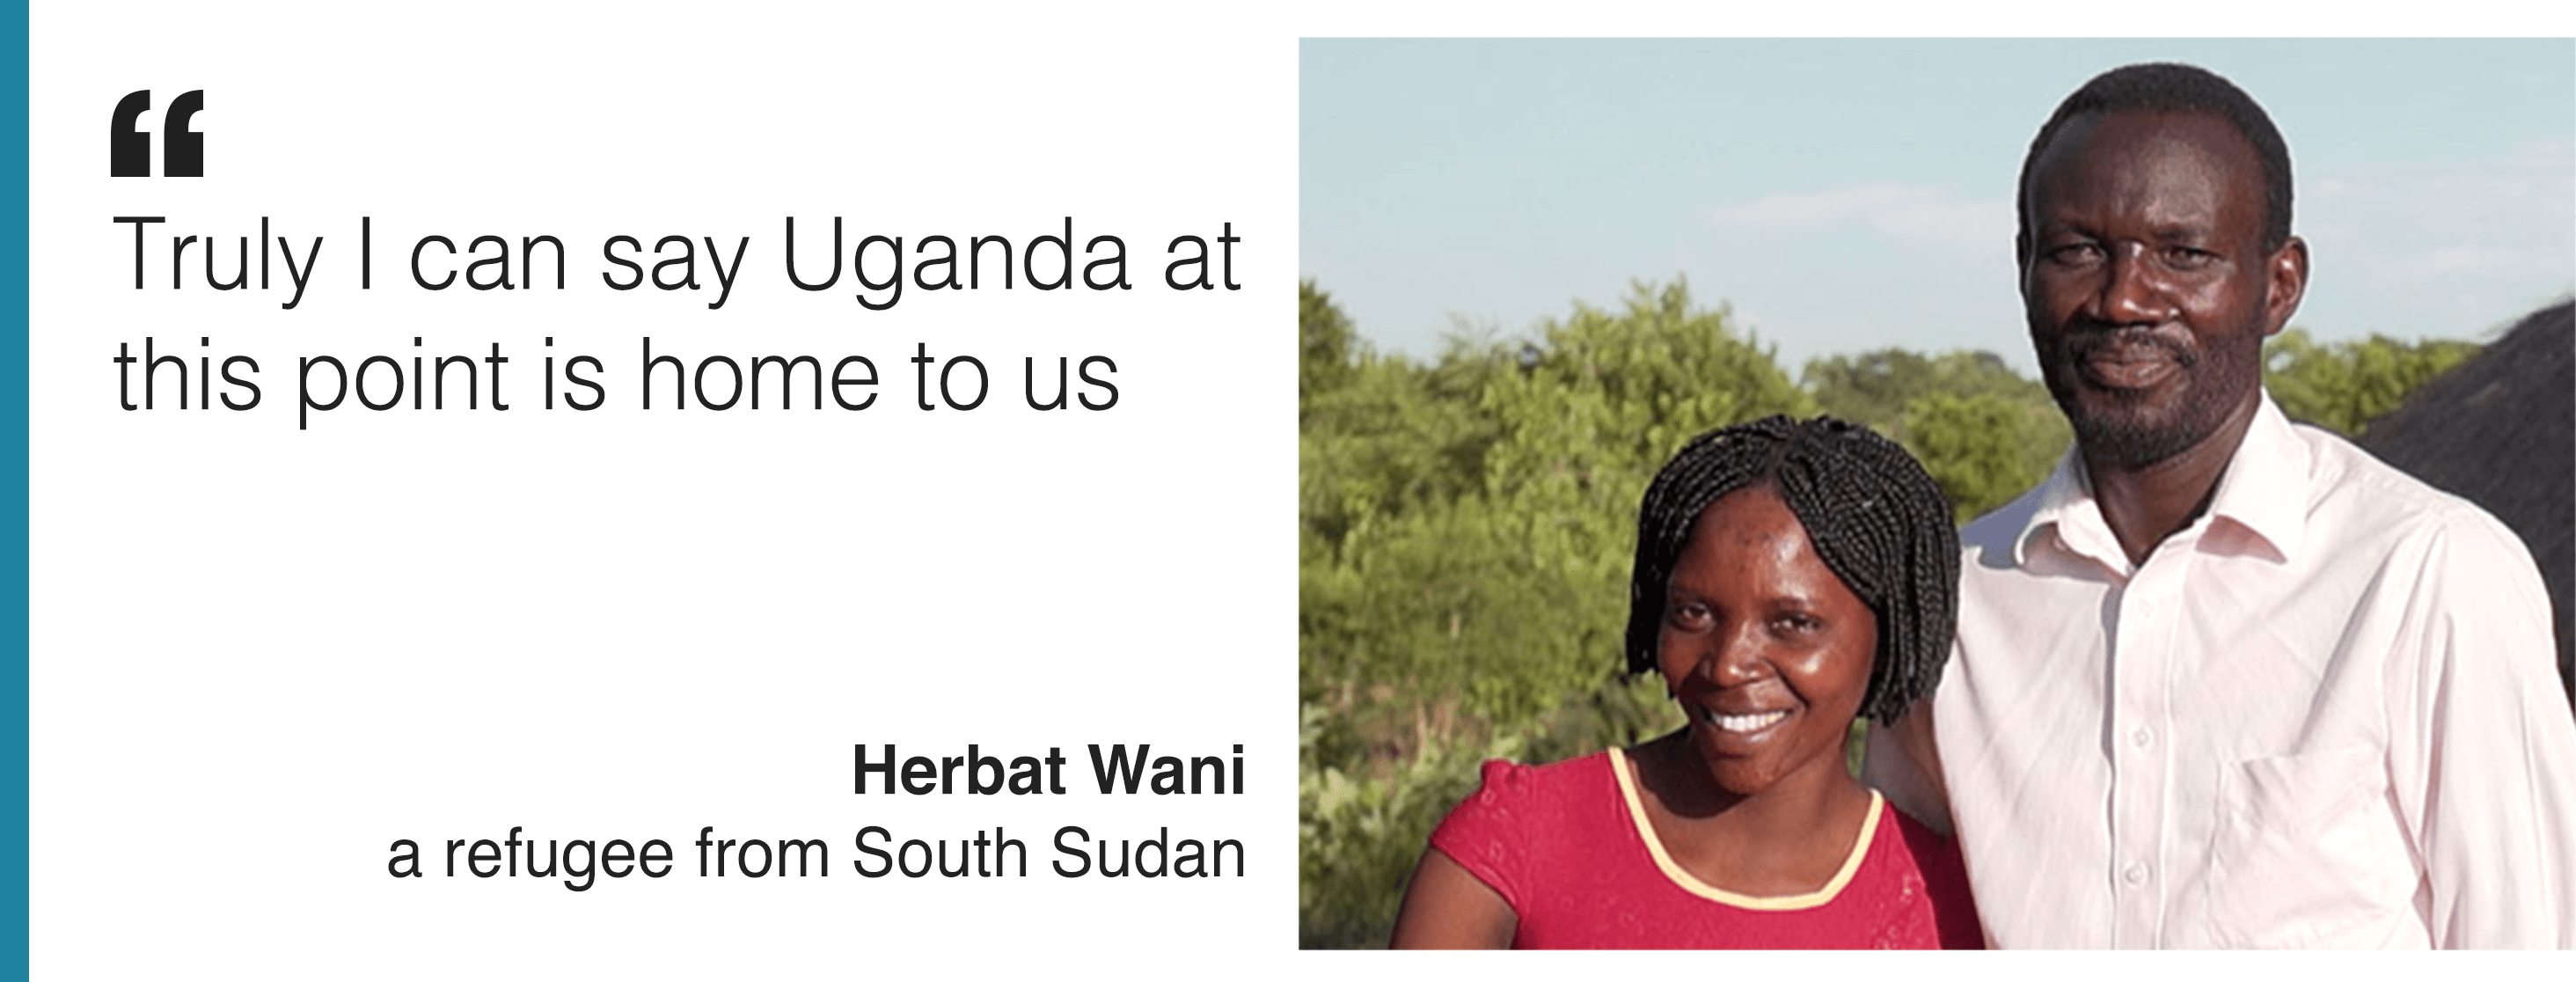 Изображение и цитата Хербата Вани, который говорит: «По правде говоря, я могу сказать, что Уганда на данный момент является нашим домом».